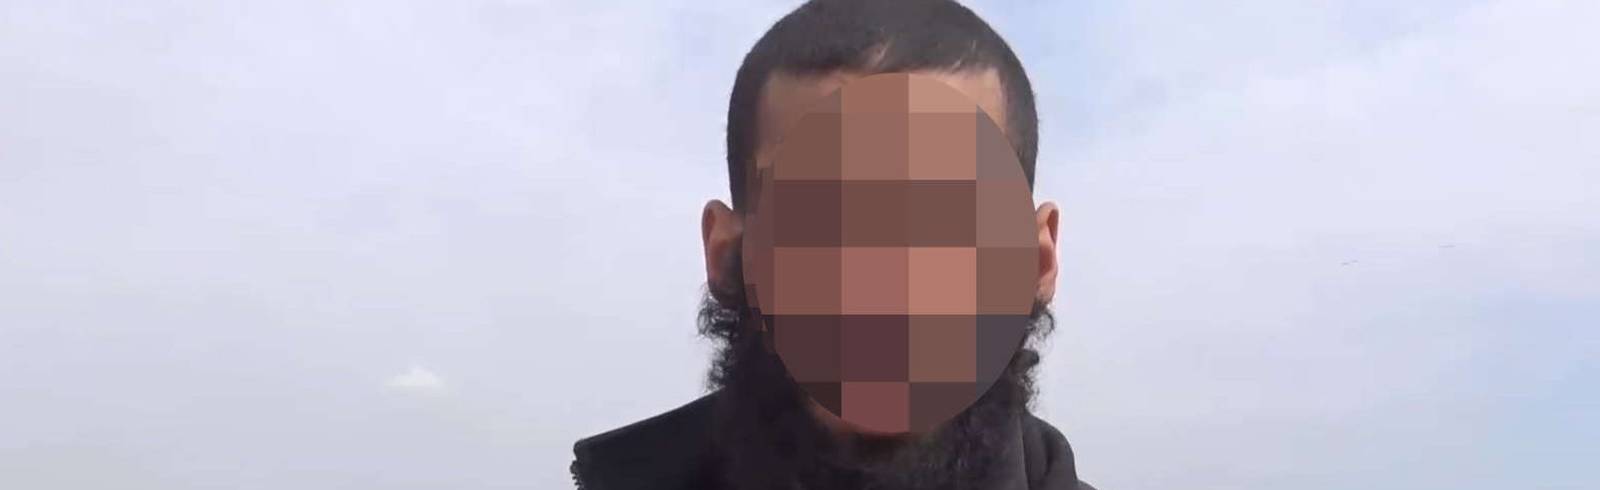 Wien entzieht IS-Kämpfer Staatsbürgerschaft